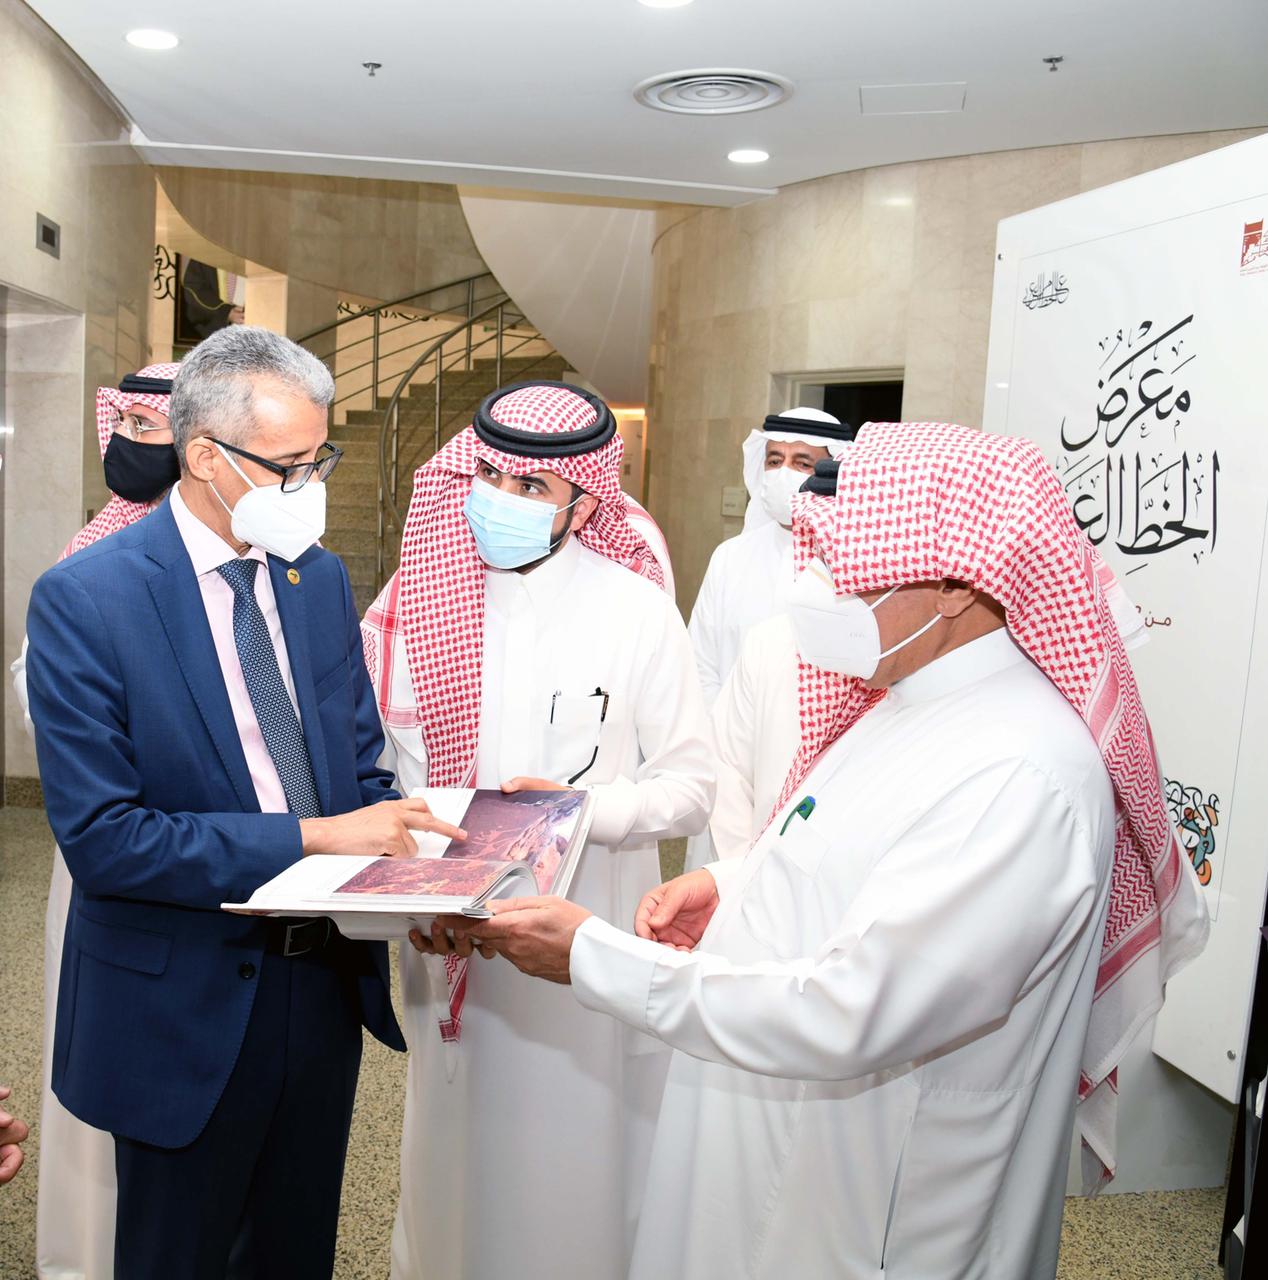 مكتبة الملك عبدالعزيز العامة والألكسو تطلقان معرضًا للخط العربي في تونس